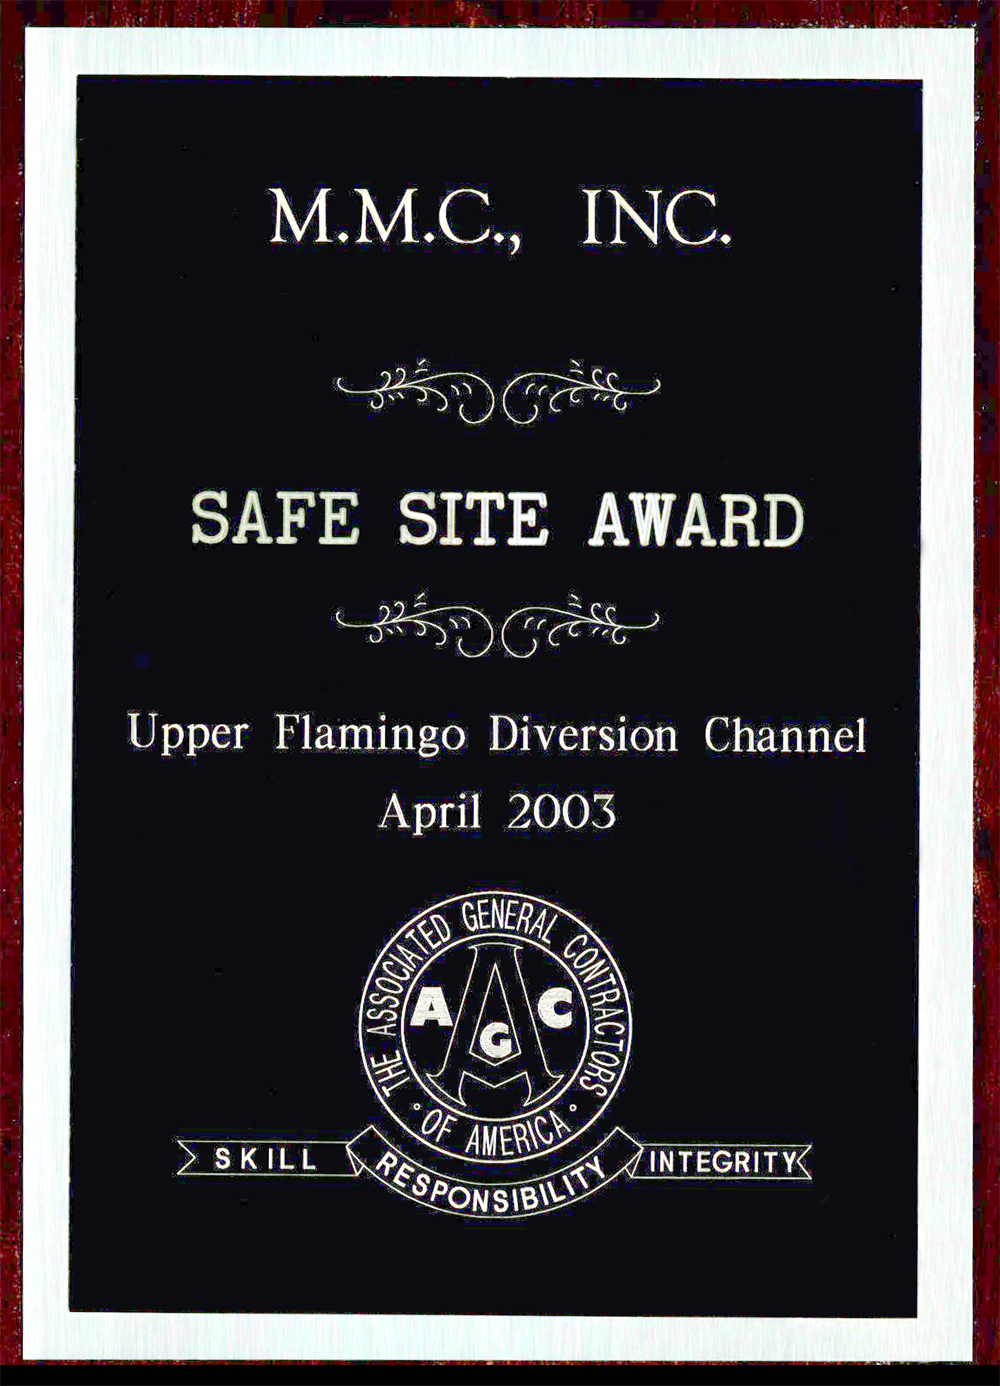 MMC Safe Site Award, Upper Flamingo Diversion Channel